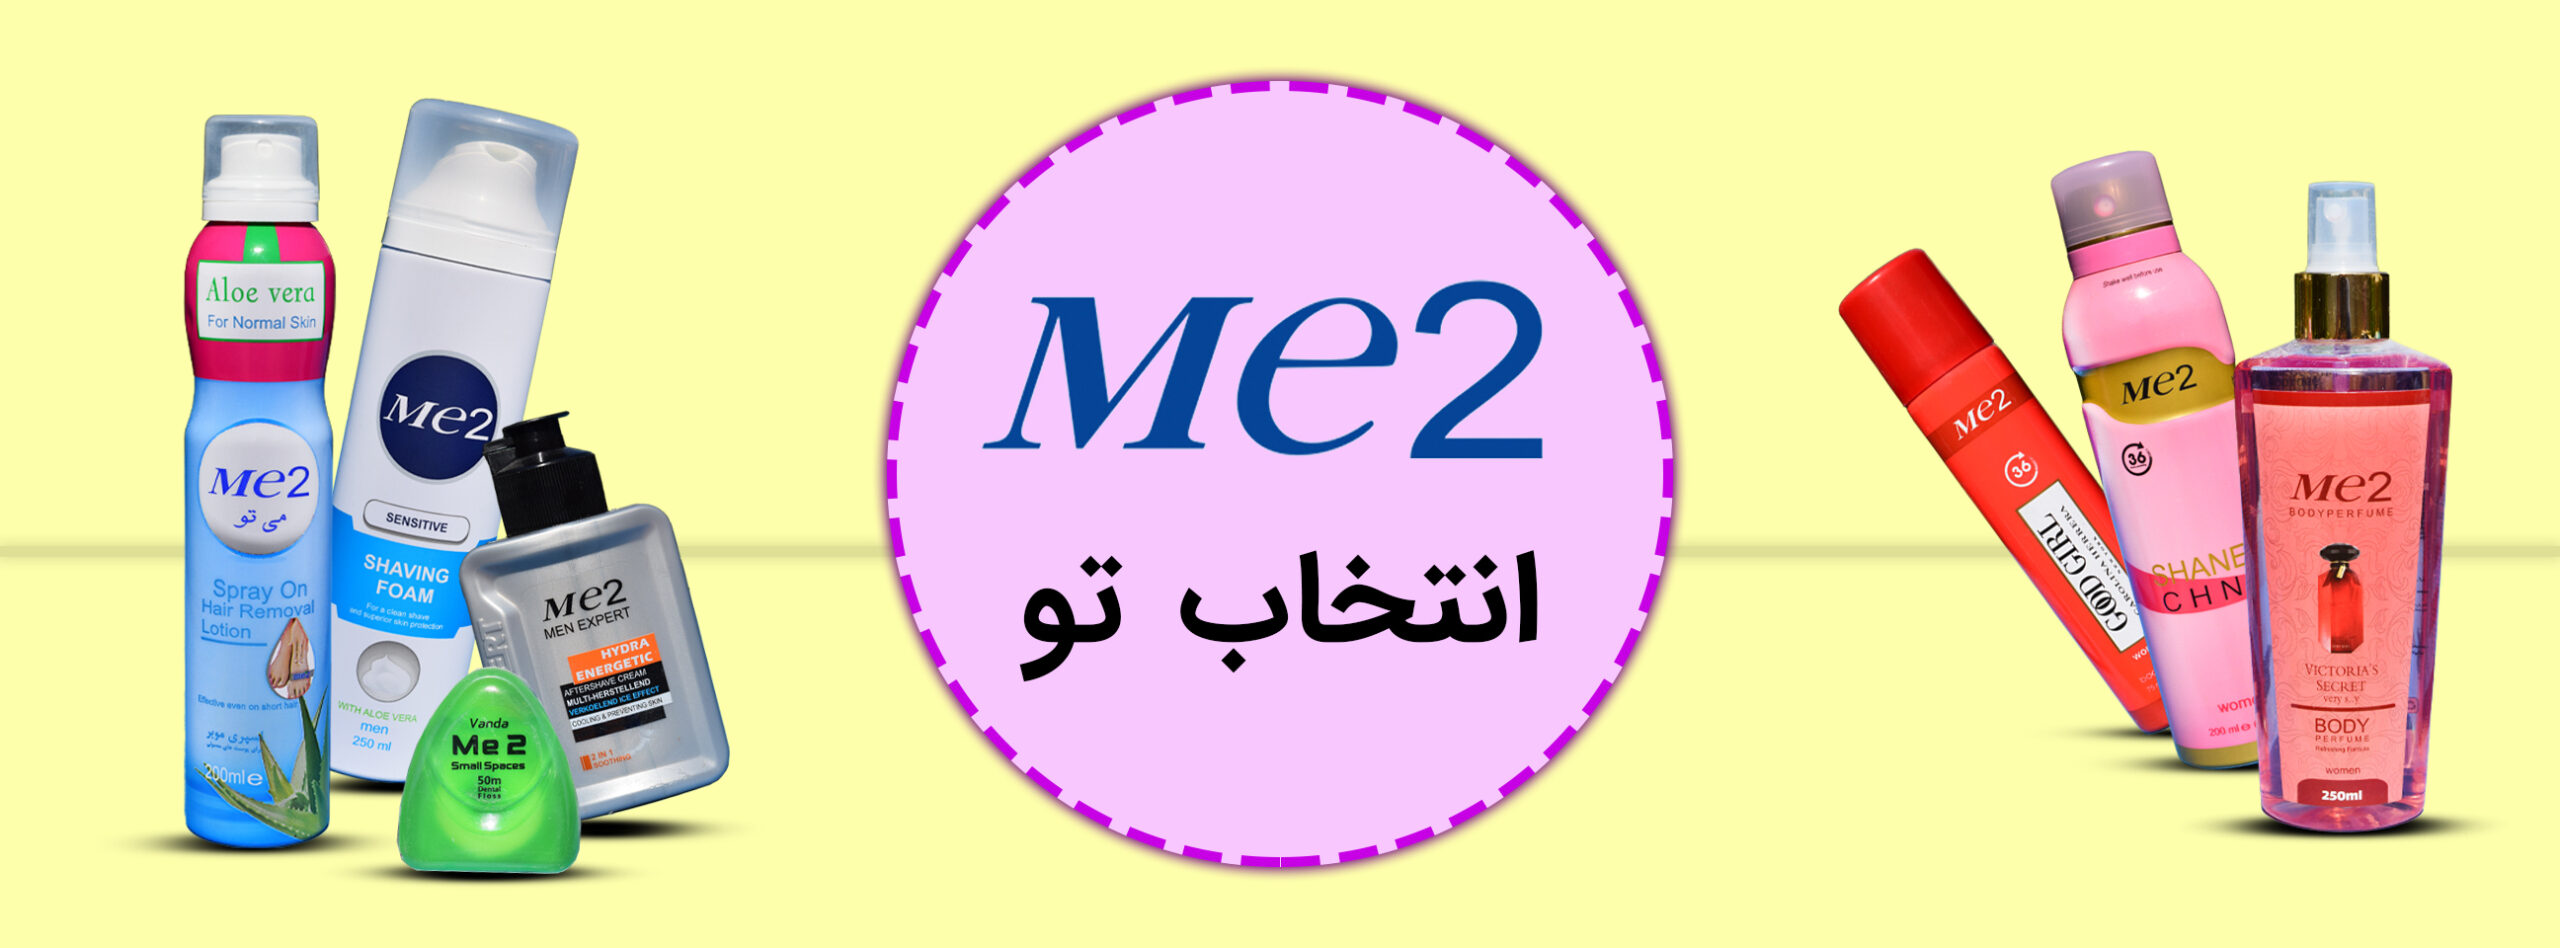 Me2 group